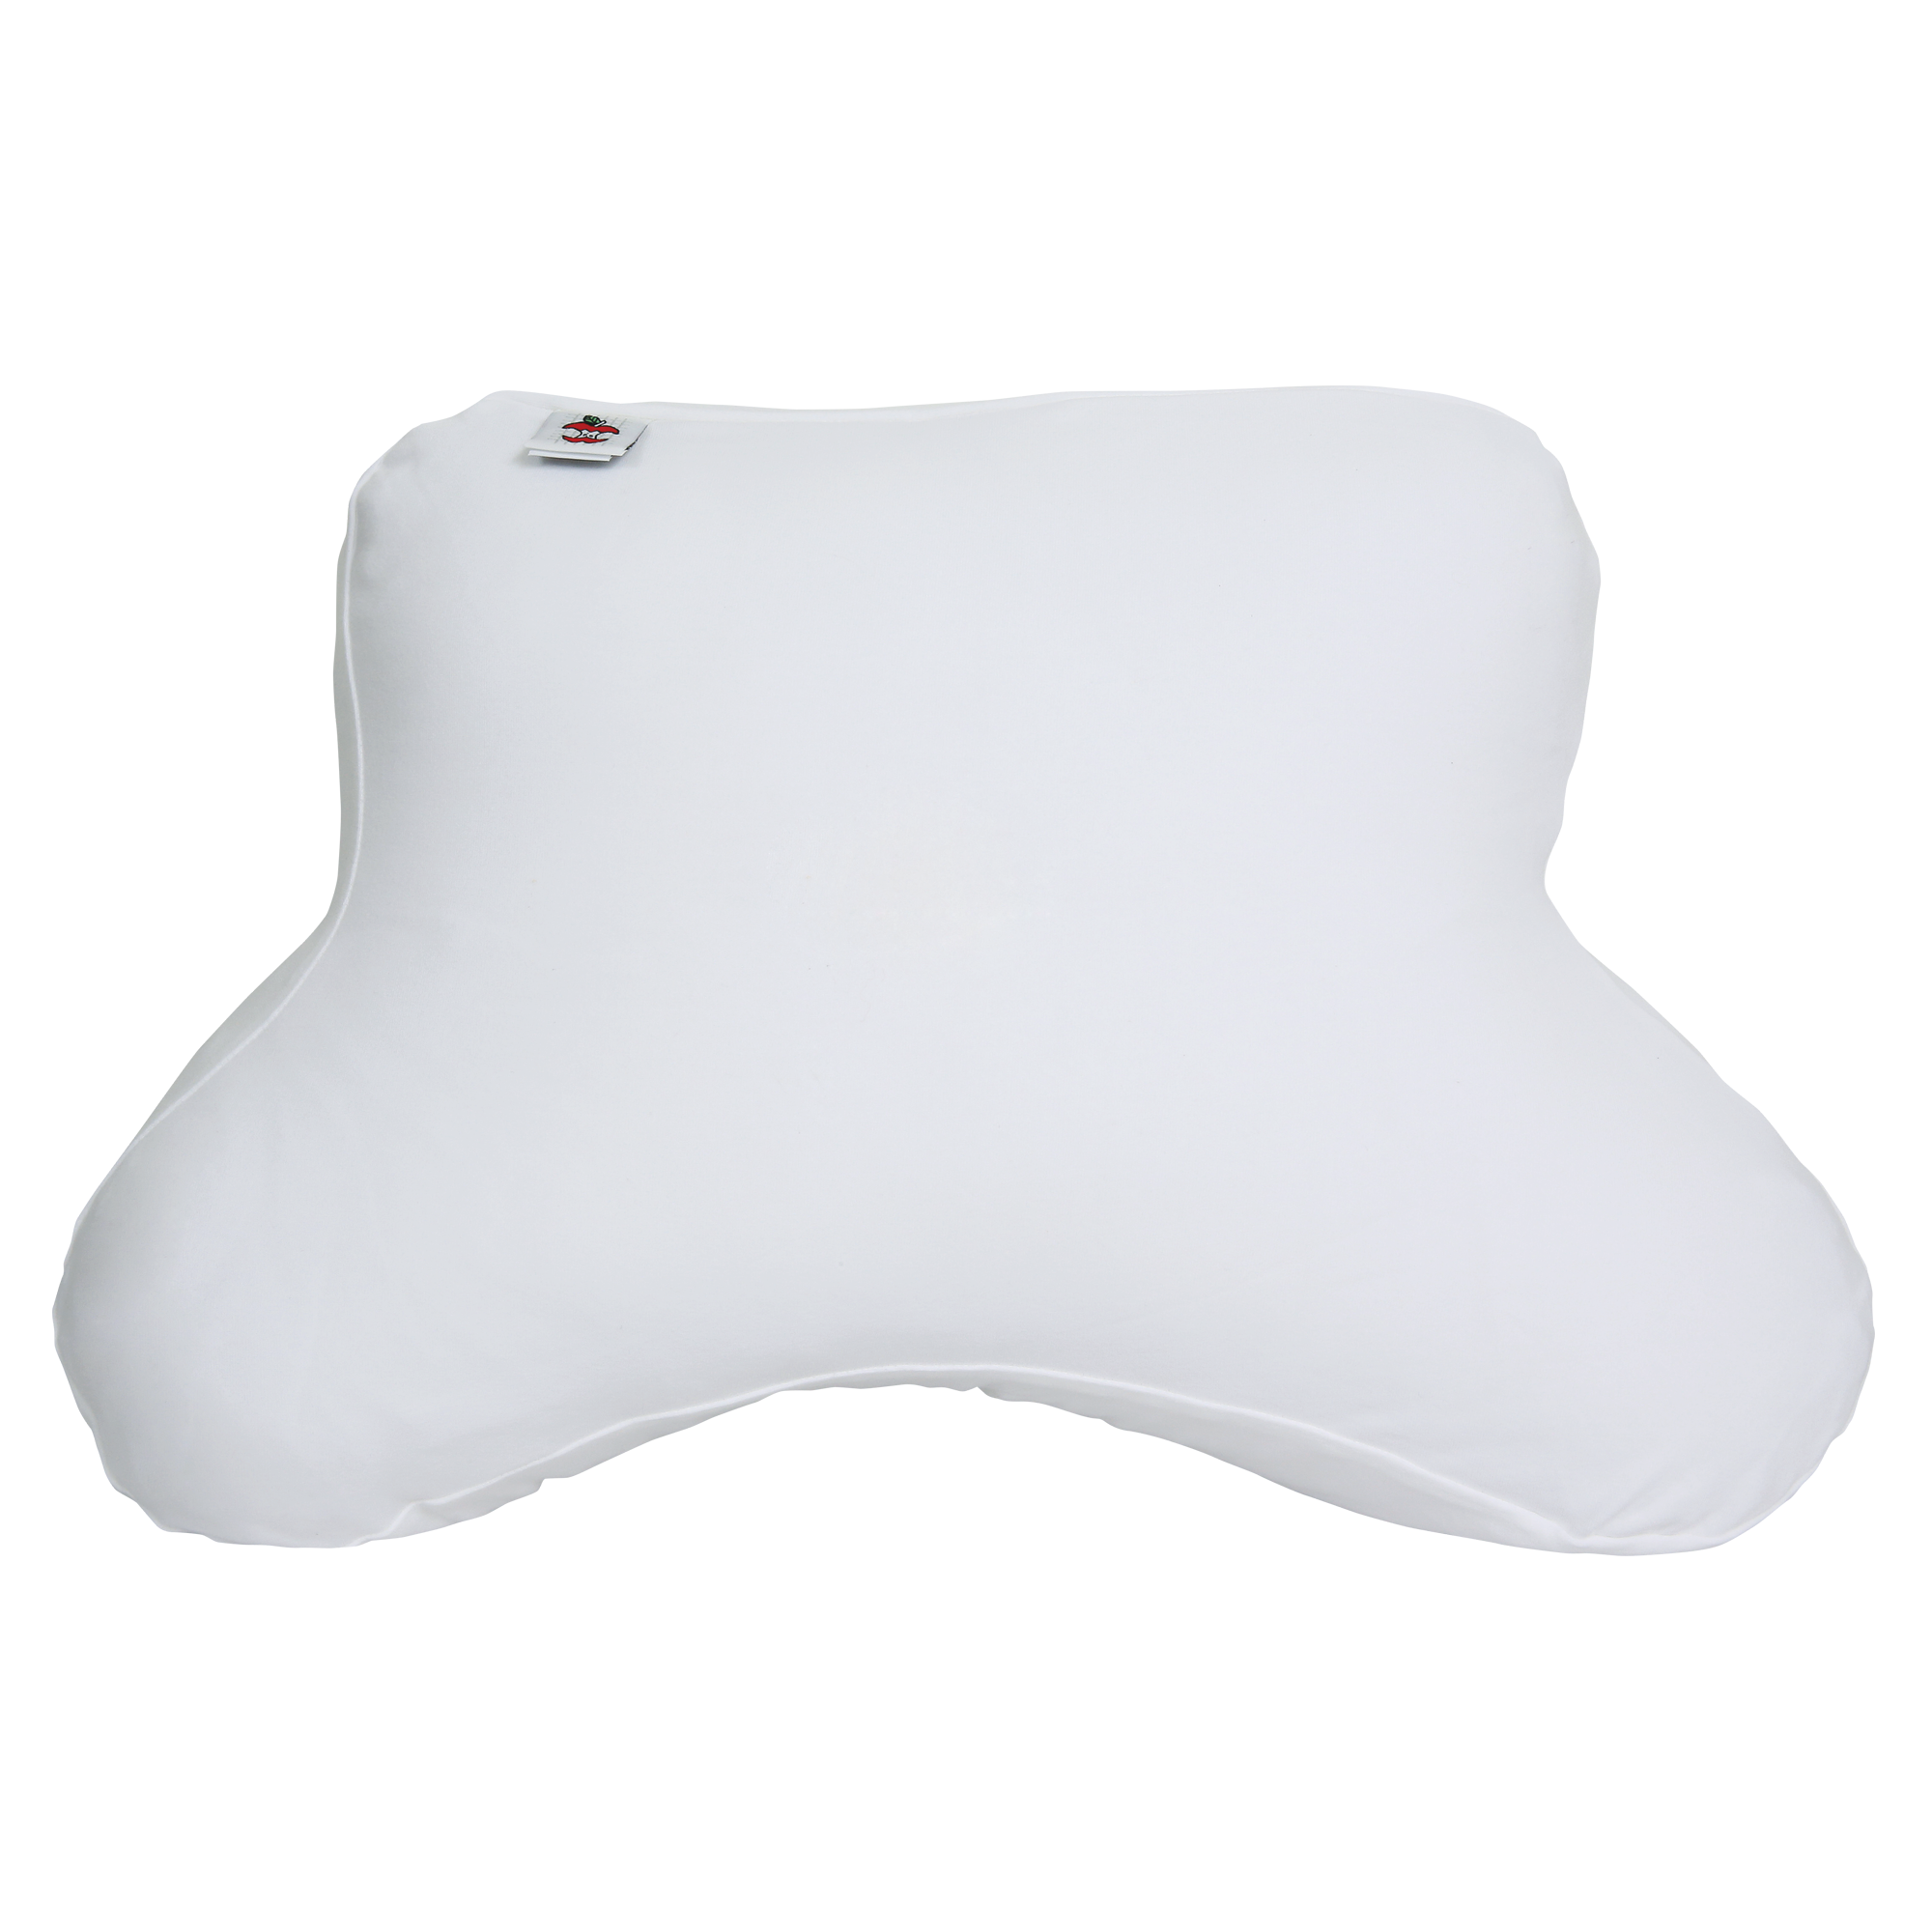 Core CPAP Pillow Case